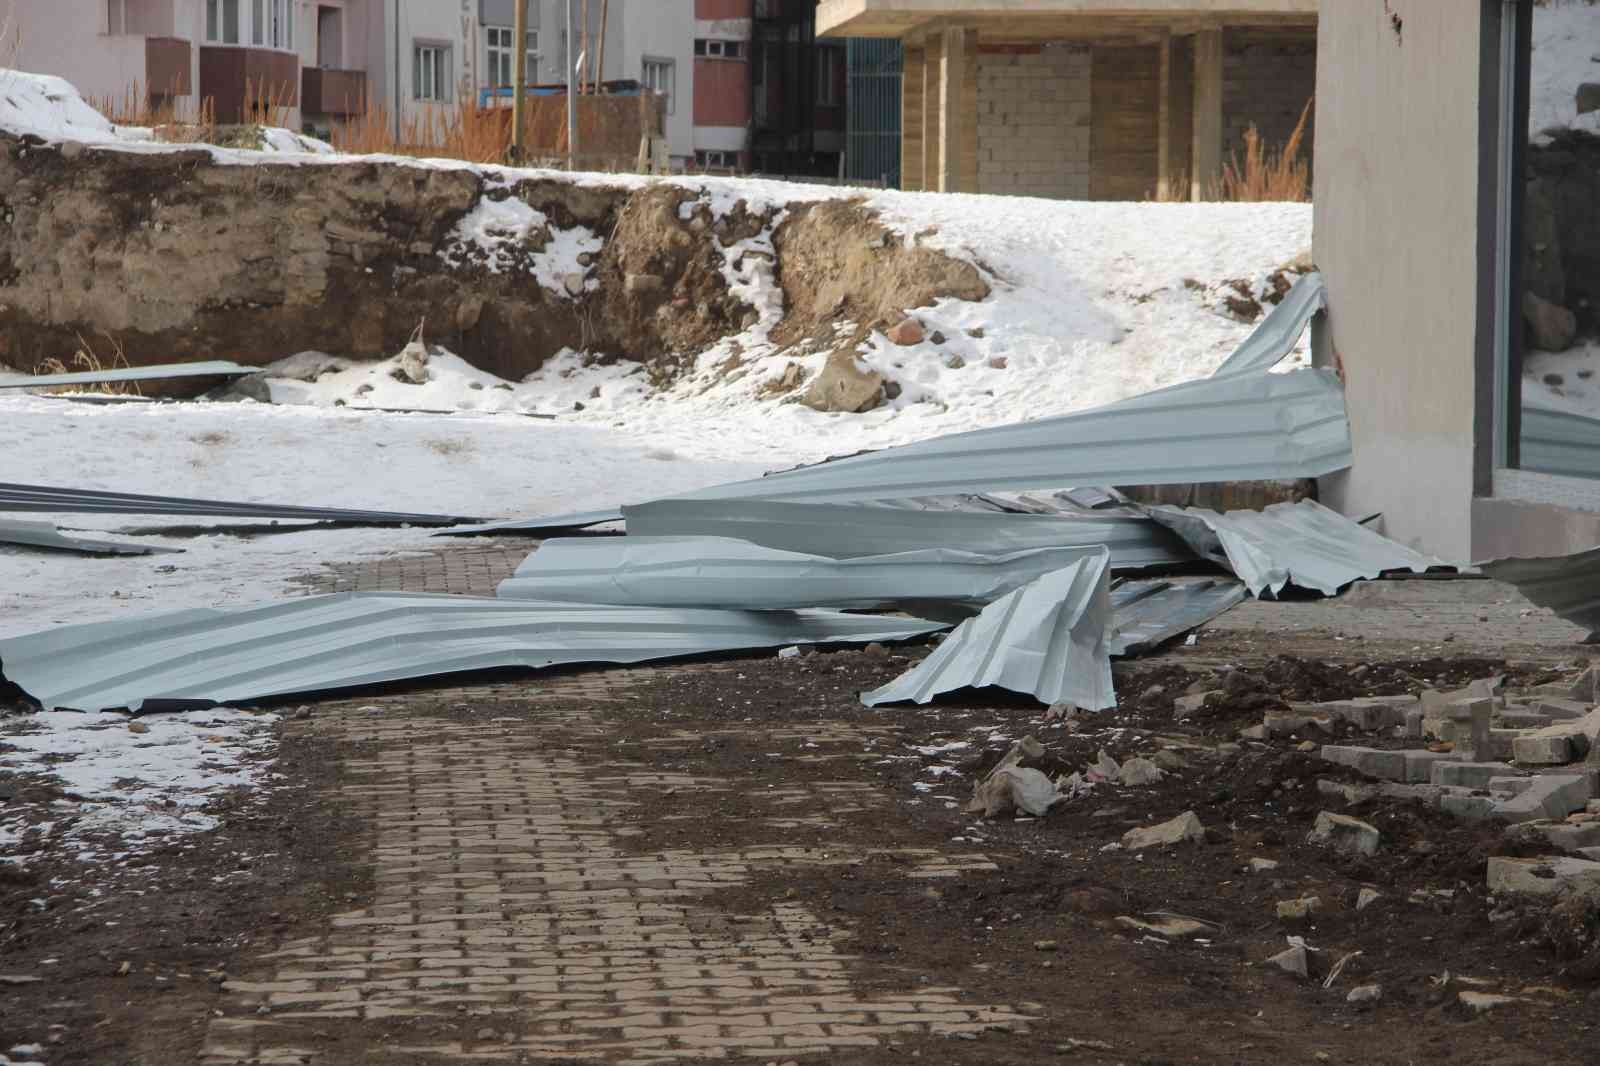 Erzurum’da şiddetli fırtına hayatı felç etti, okulların çatıları kağıt gibi uçtu #erzurum